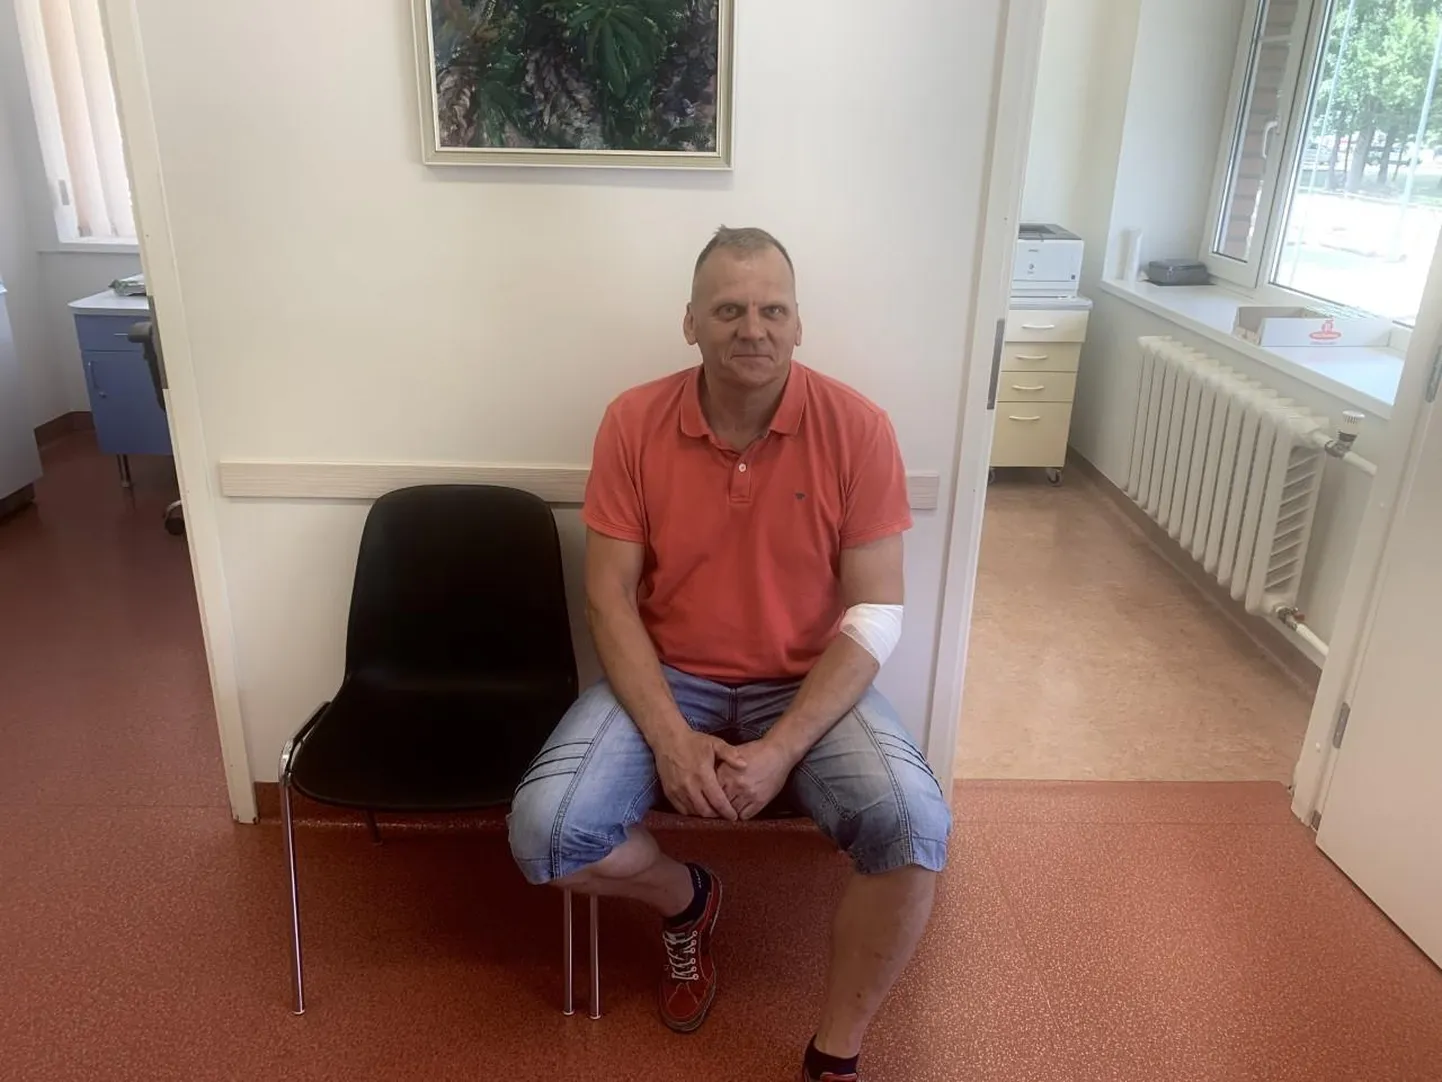 «Veri vahetub ja tunned ennast hästi, et saad teisi aidata,» põhjendas umbes 20-aastase staažiga doonor Toomas Baranov, miks ta kutse peale kohe Tartu Ülikooli kliinikumi verekeskusesse kohale ruttas.